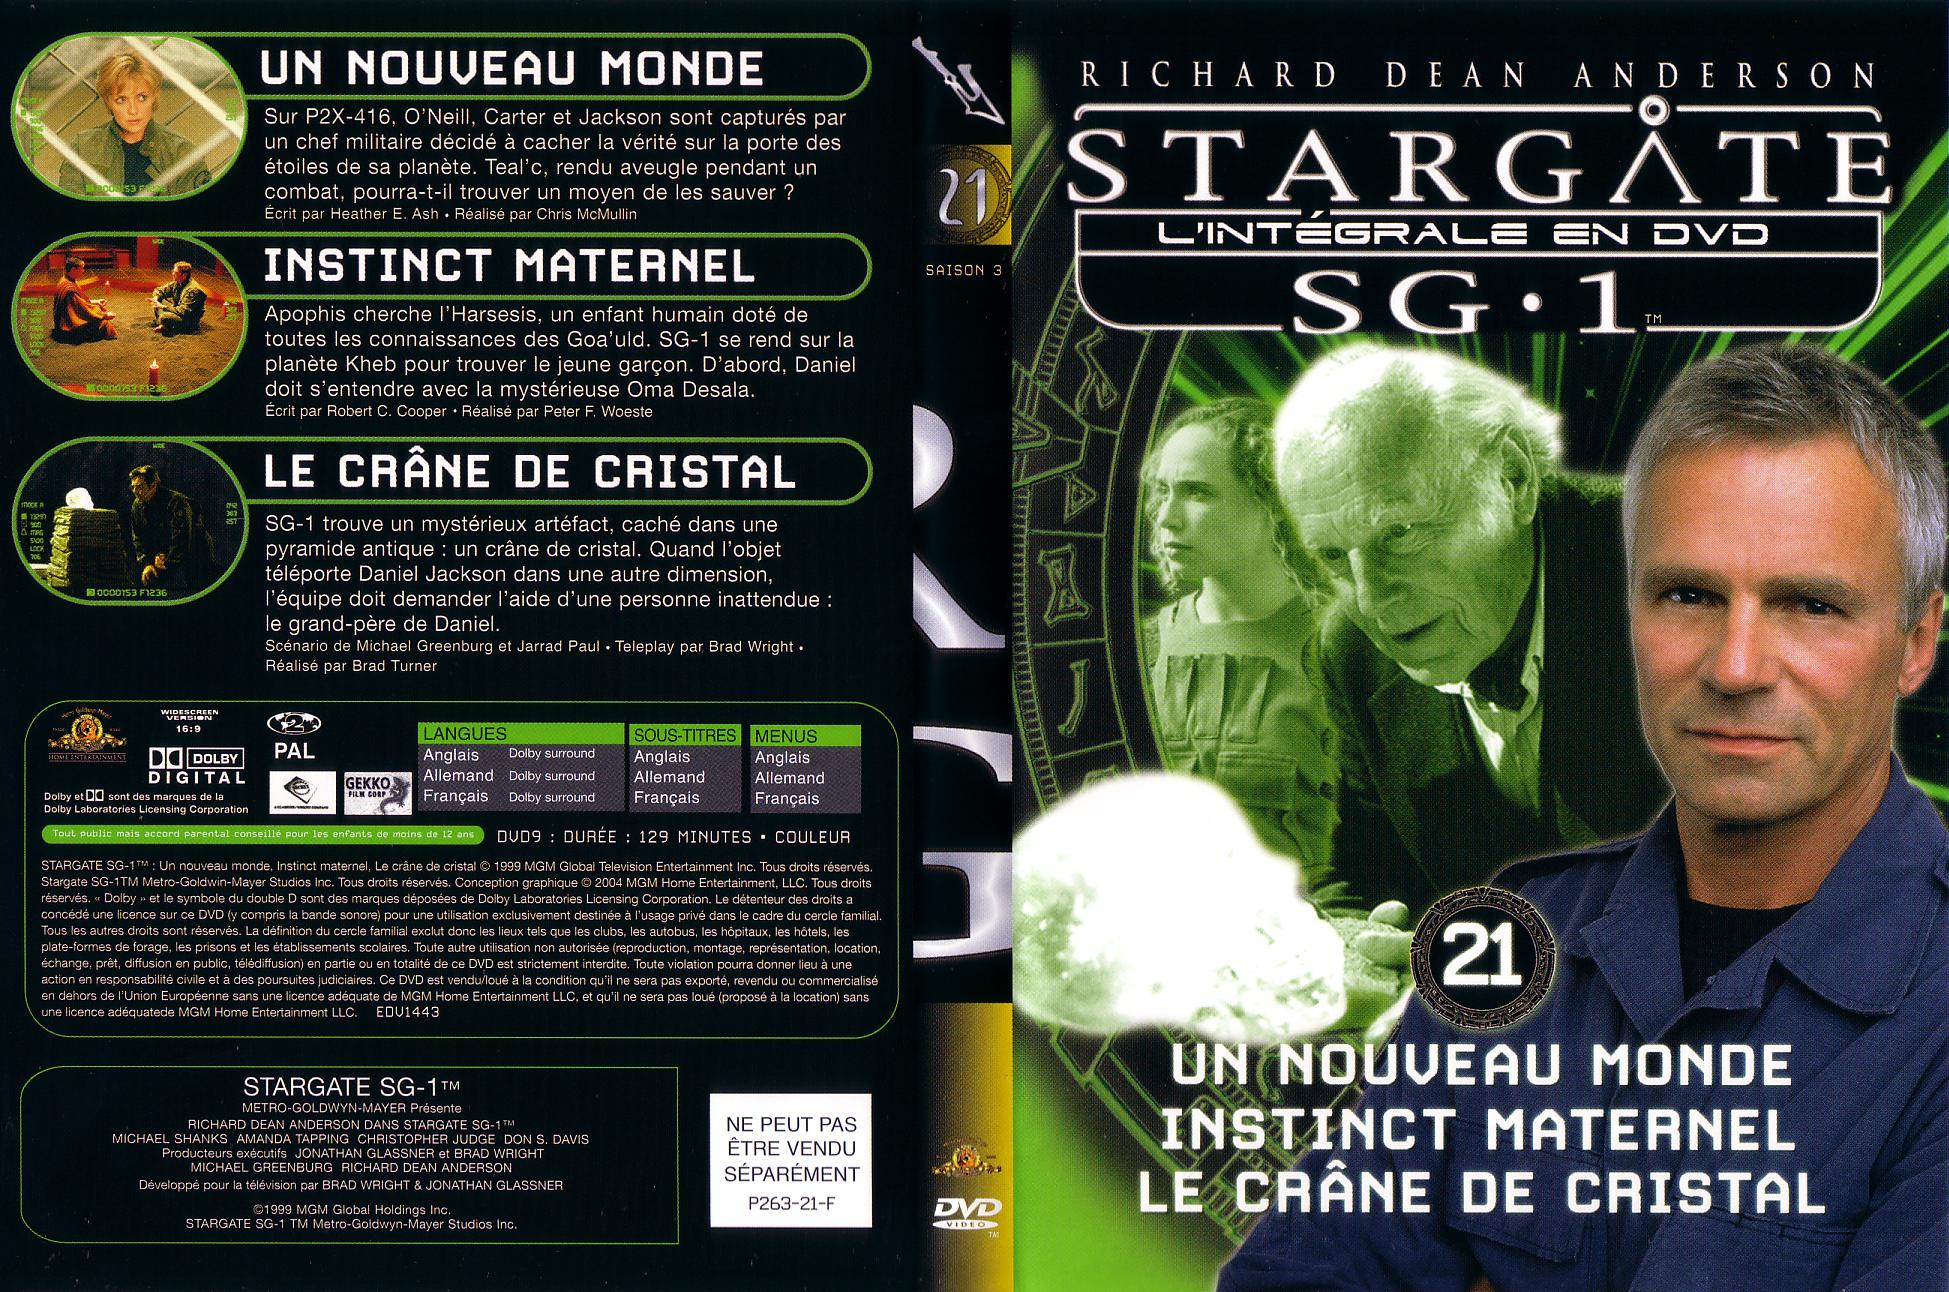 Jaquette DVD Stargate saison 3 vol 21